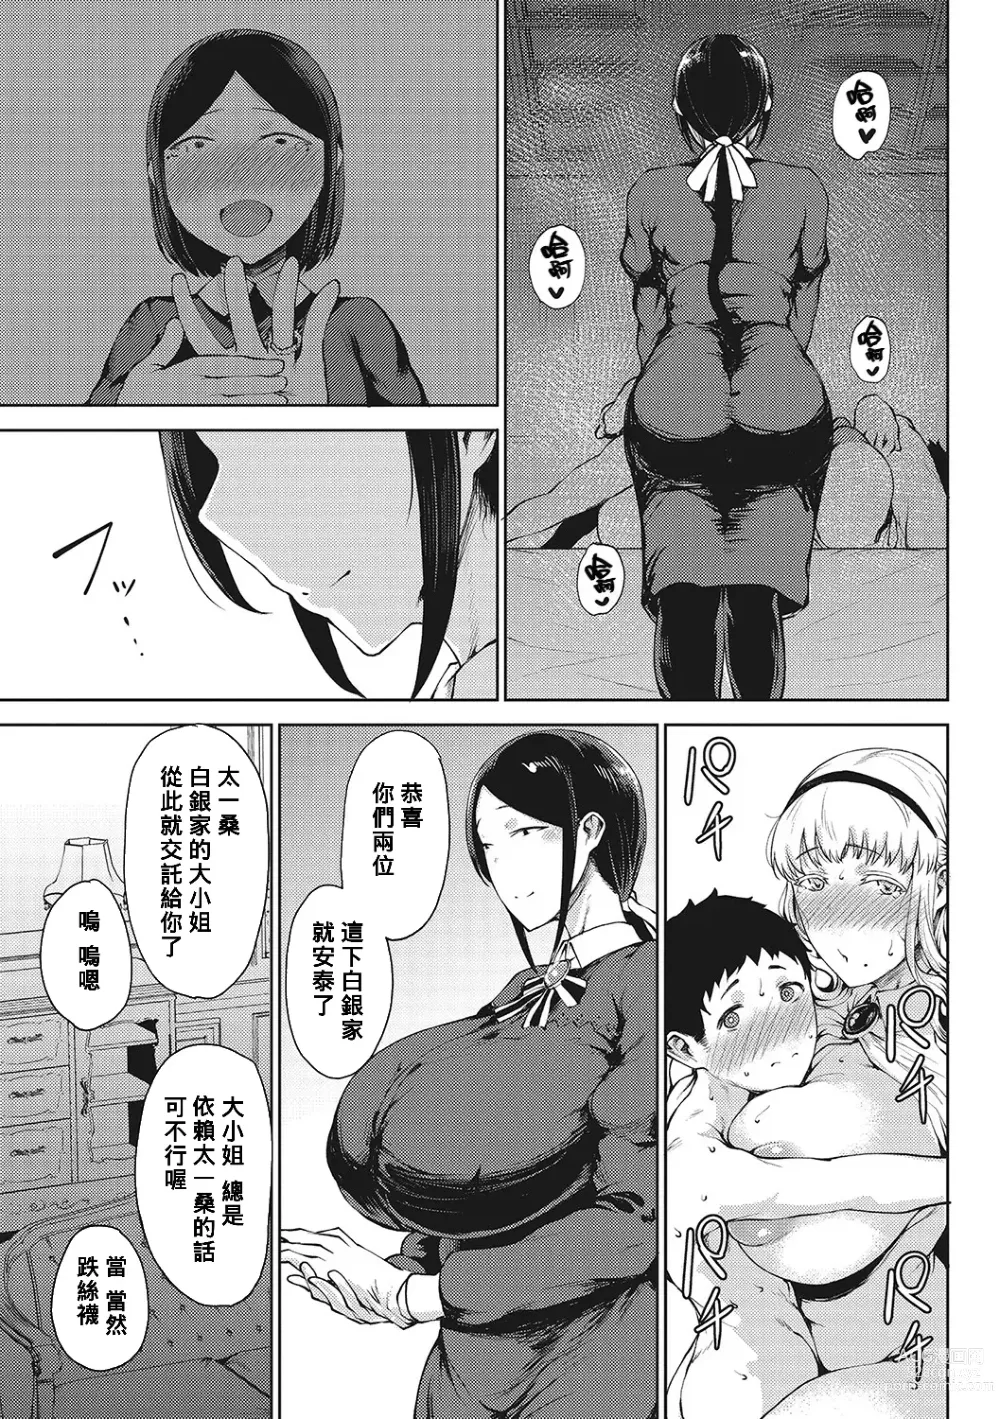 Page 23 of manga Saitan no Yakusoku Zenpen